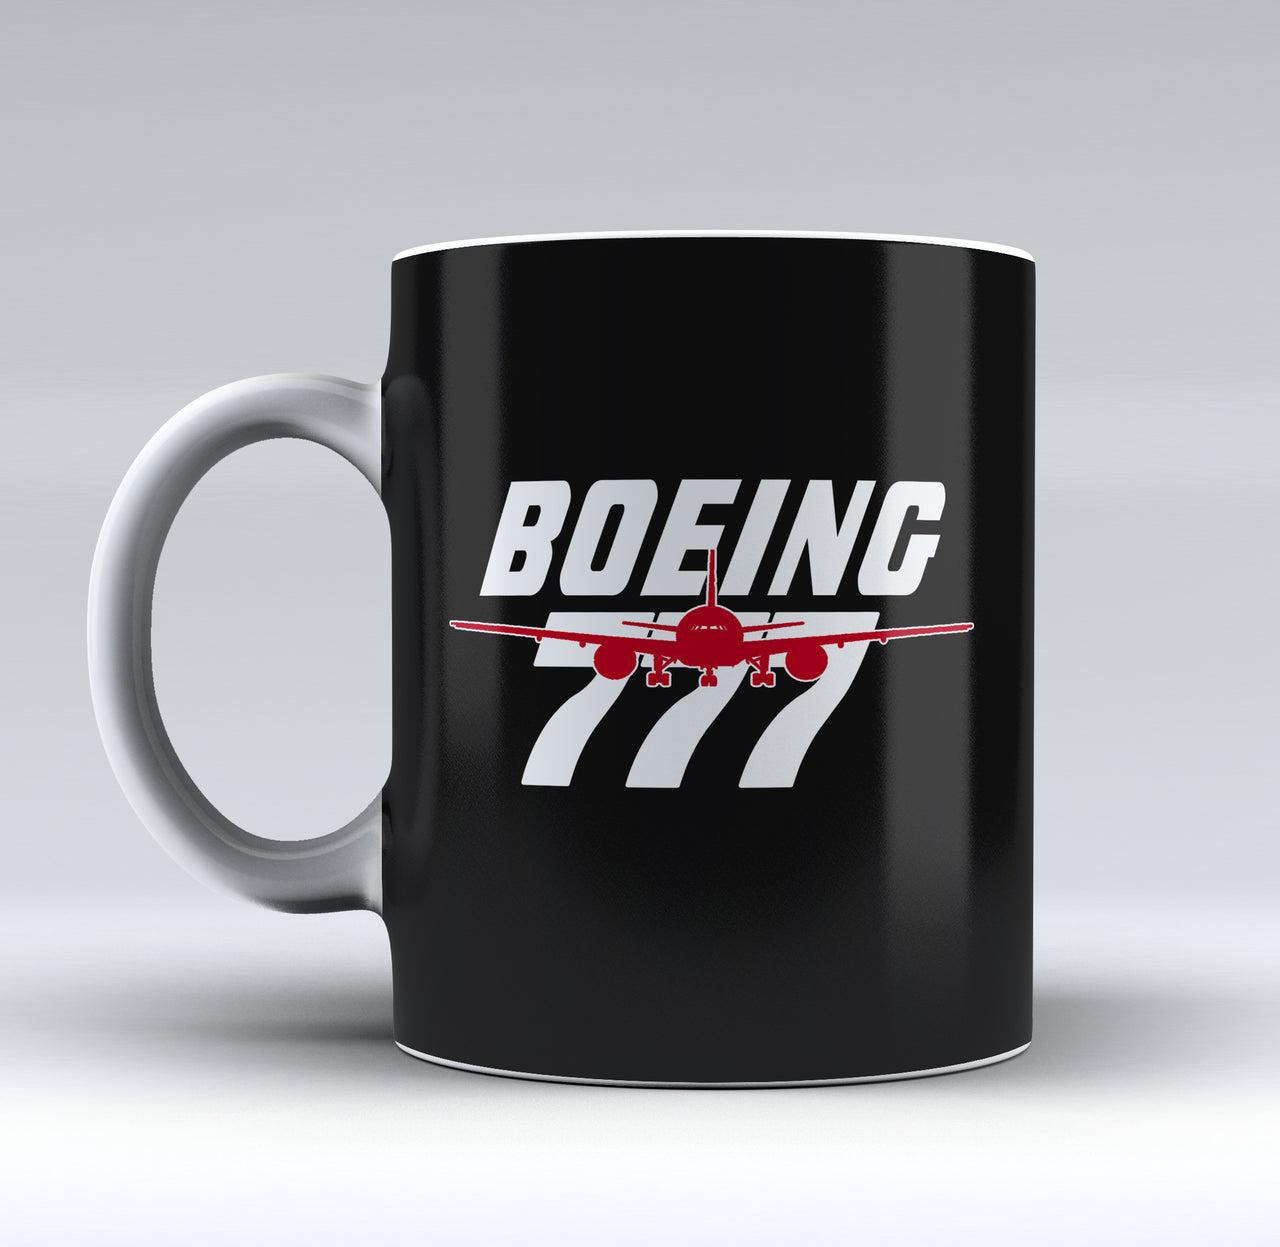 Amazing Boeing 777 Designed Mugs